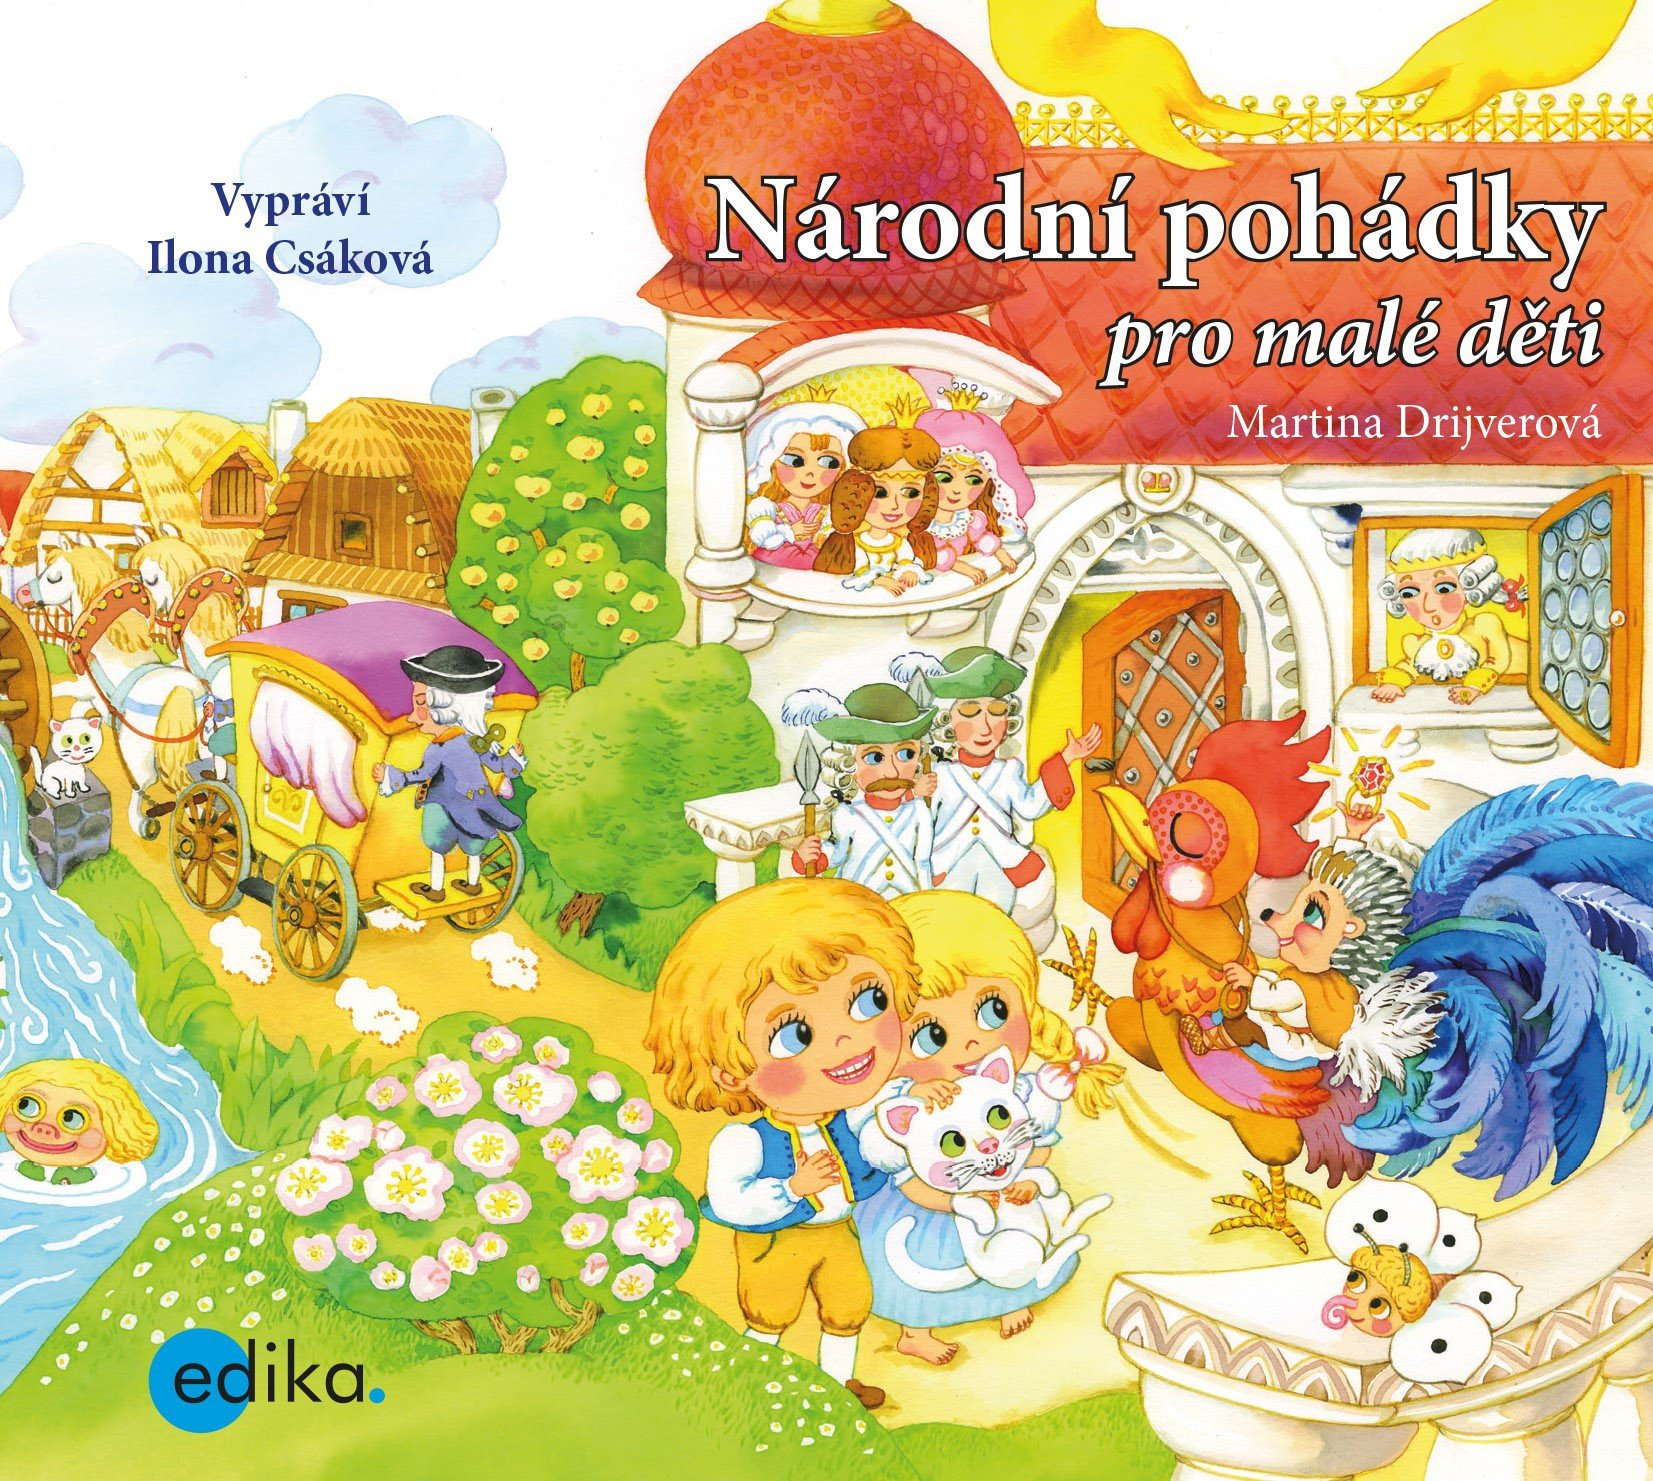 Národní pohádky pro malé děti (audiokniha pro děti) - Martina Drijverová